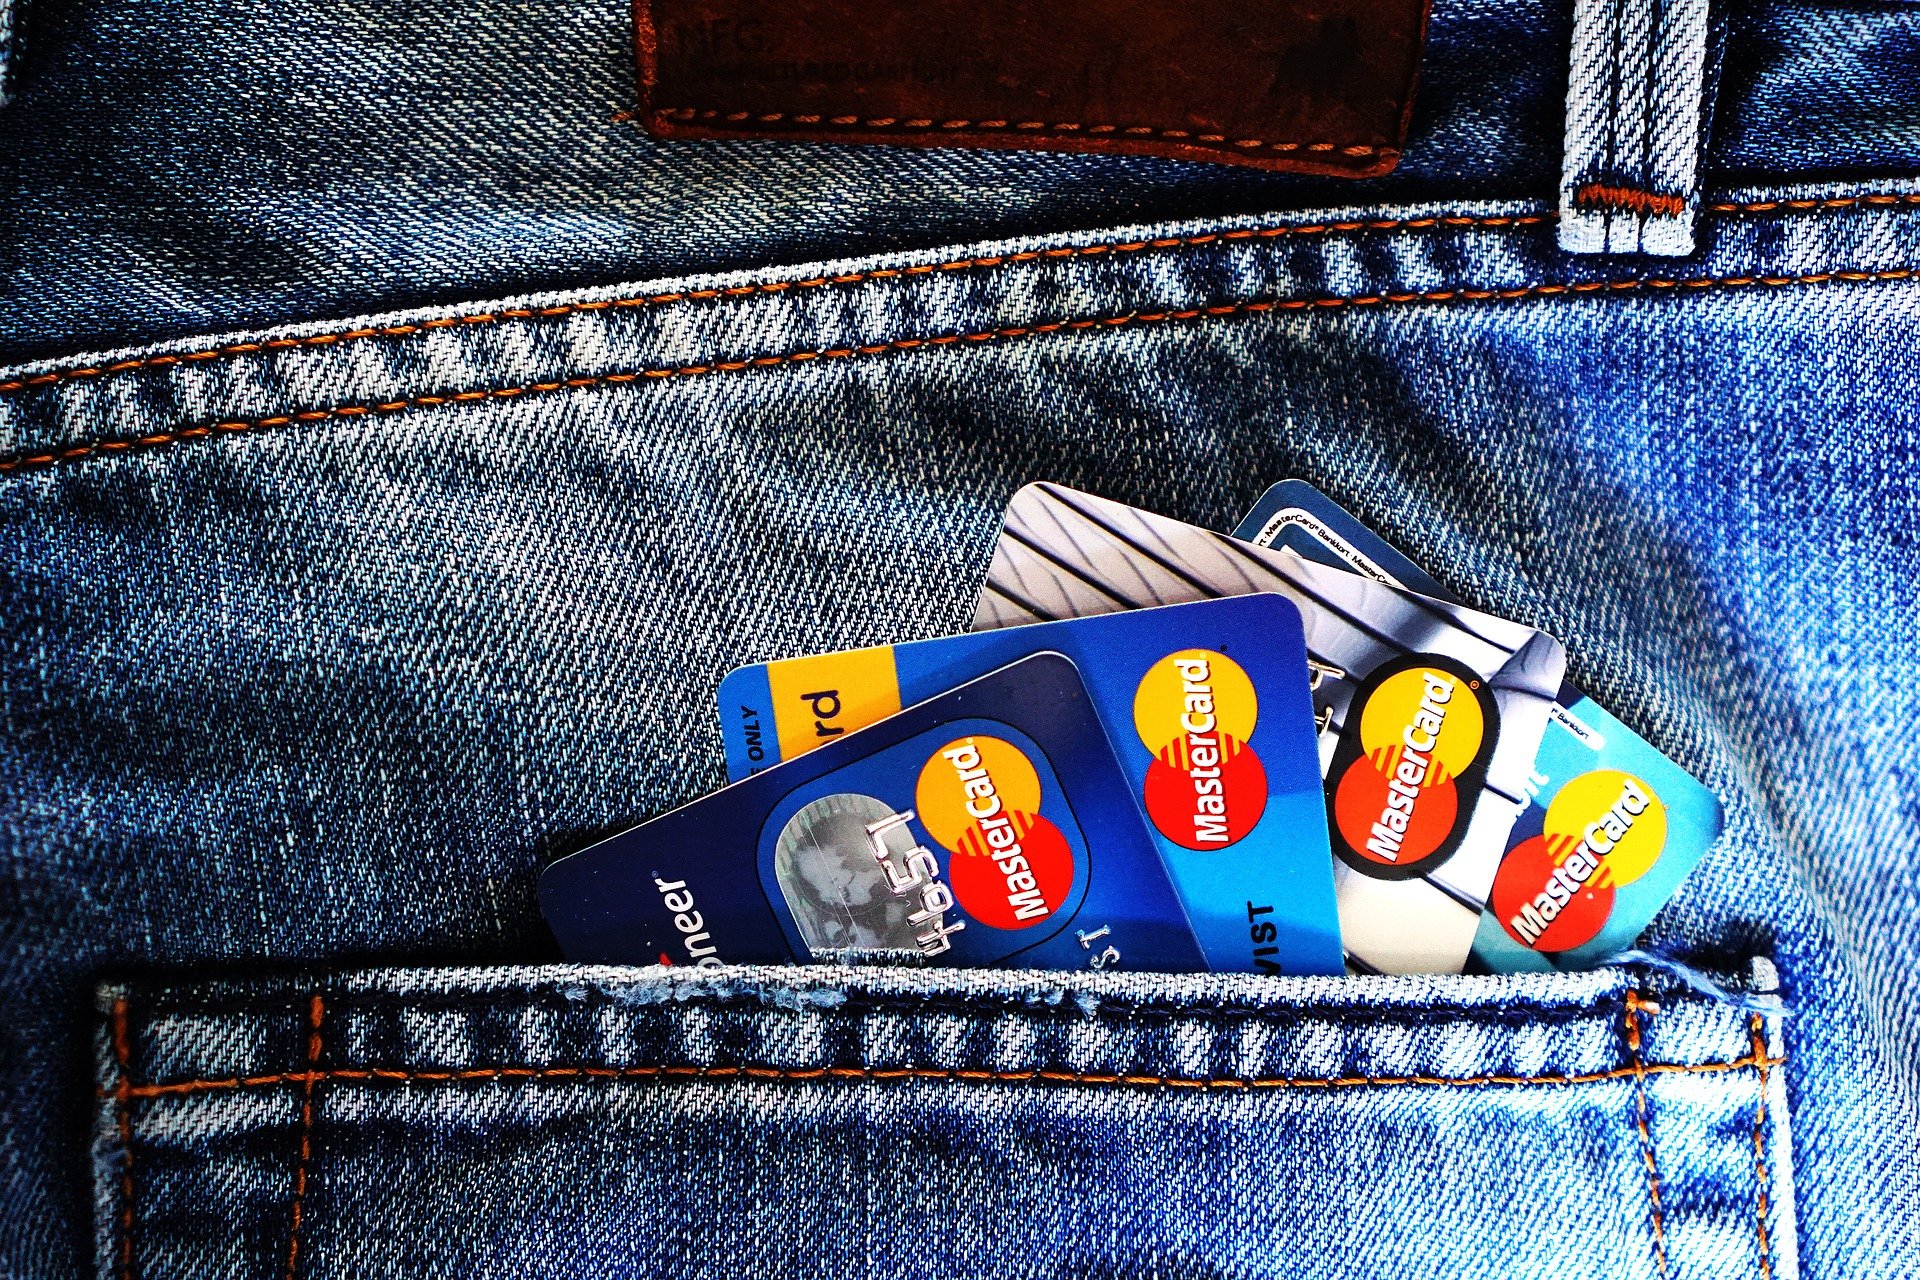 Descontos usando o cartão de crédito, Foto: Pixabay.